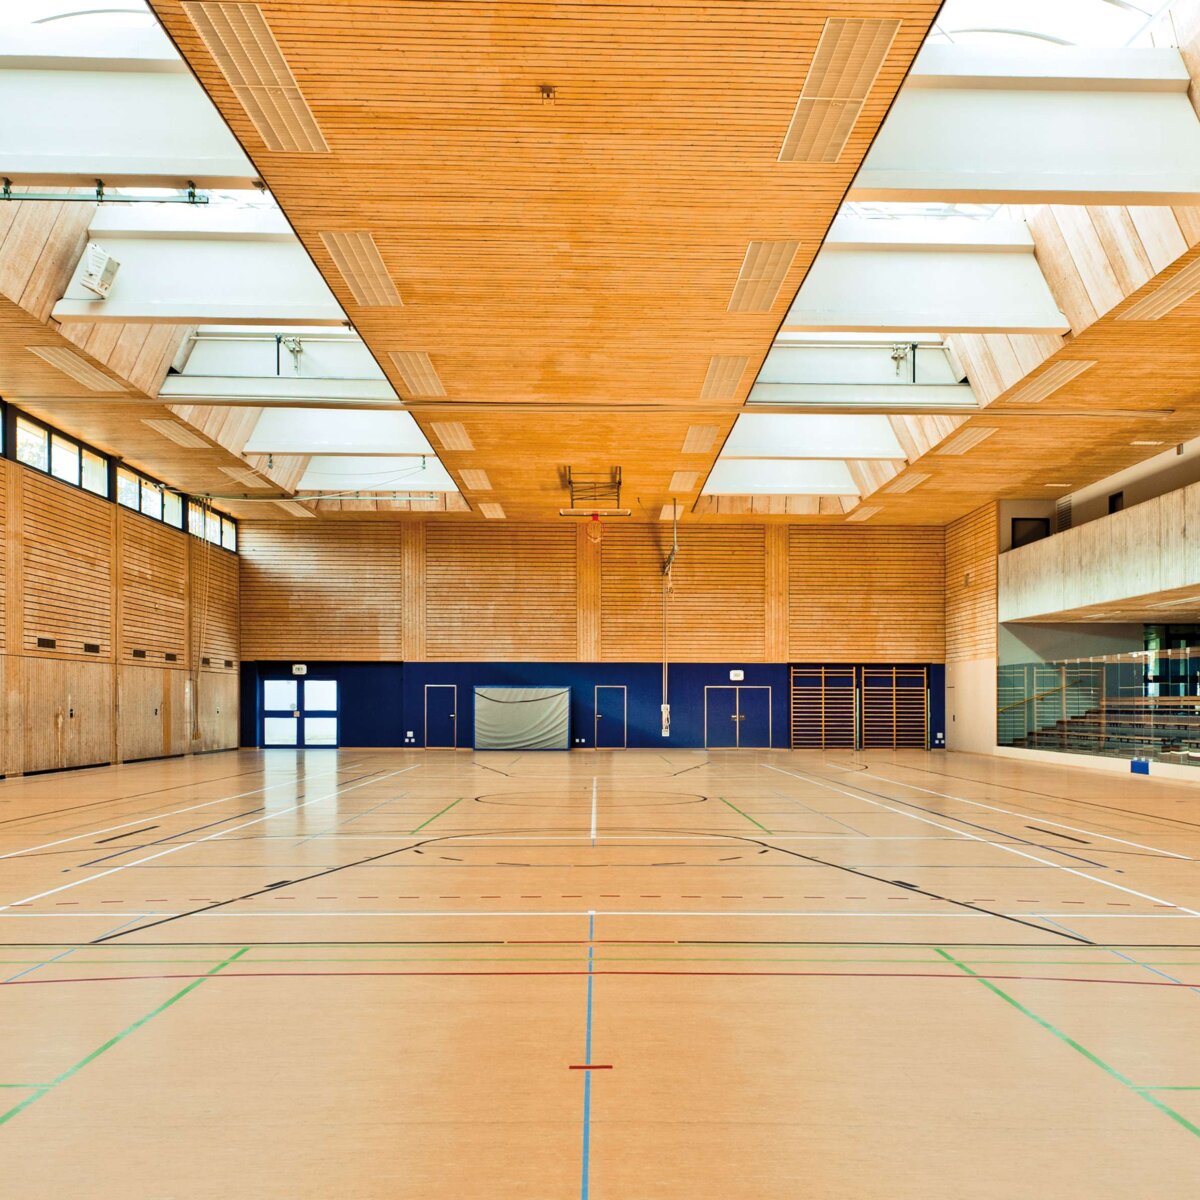 Ablachhalle/Sporthalle | Mengen • Standard-Baubreiten von 1,50 bis 6,00 Meter in jeder beliebigen Länge sorgen für flexible Einsatzmöglichkeiten.